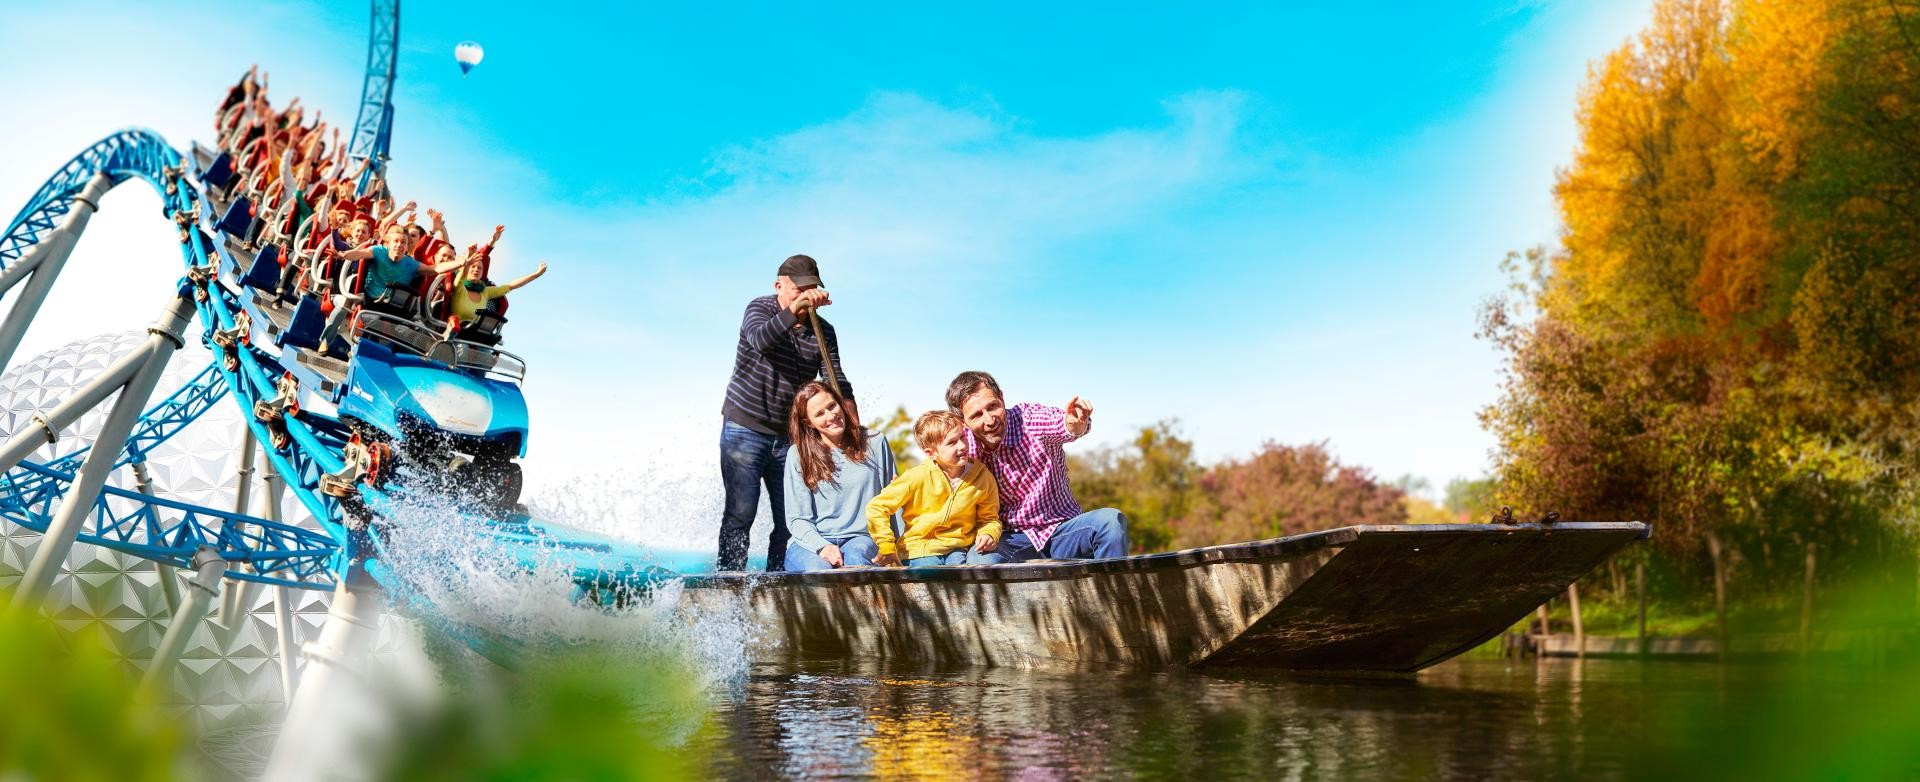 Zusammengefügtes Bild, links fährt eine Wasserachterbahn in die Mitte des Bildes zu, rechts kommt ein Stocherkahn mit einer Familie und einem Bootsfahrer aus den Schienen.